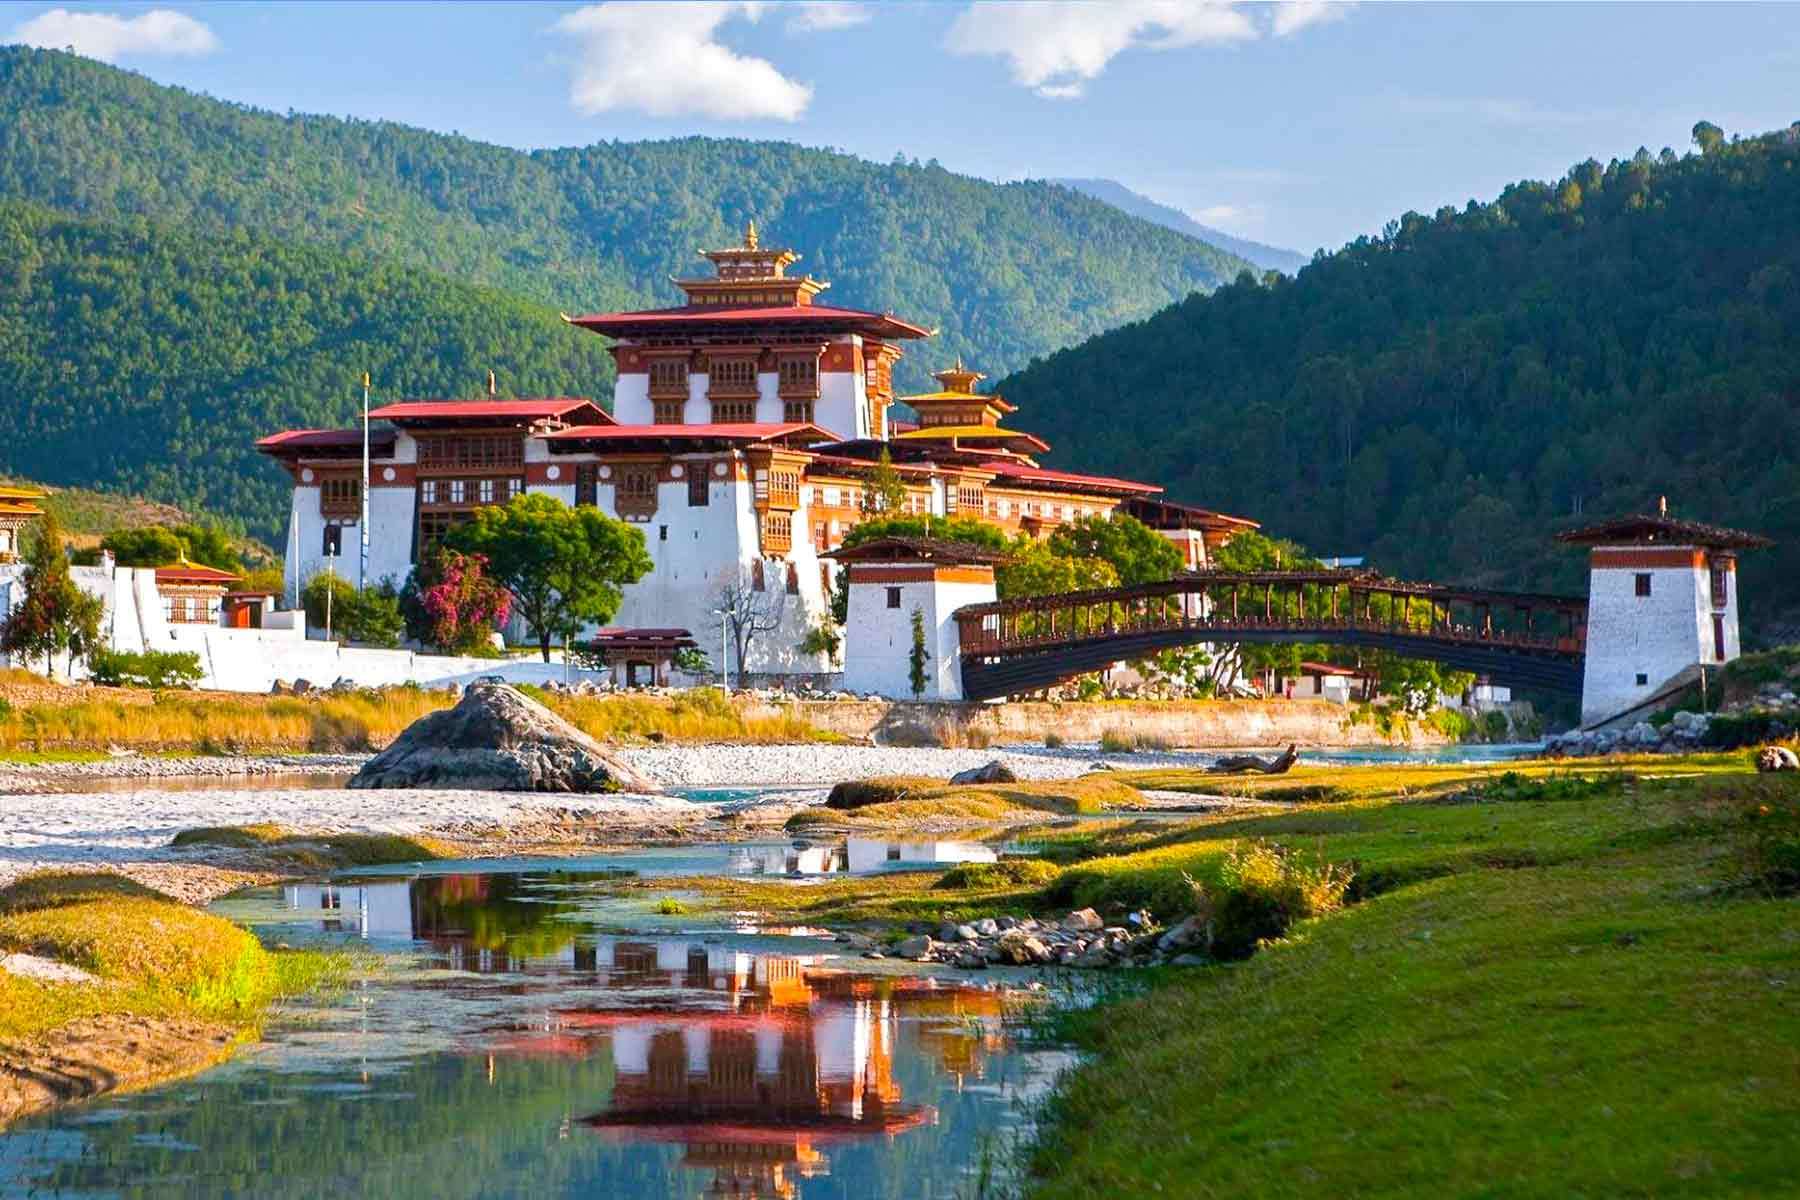 不丹是我们的邻国,近些年来,前往不丹旅行的人越来越多,为了风景,为了